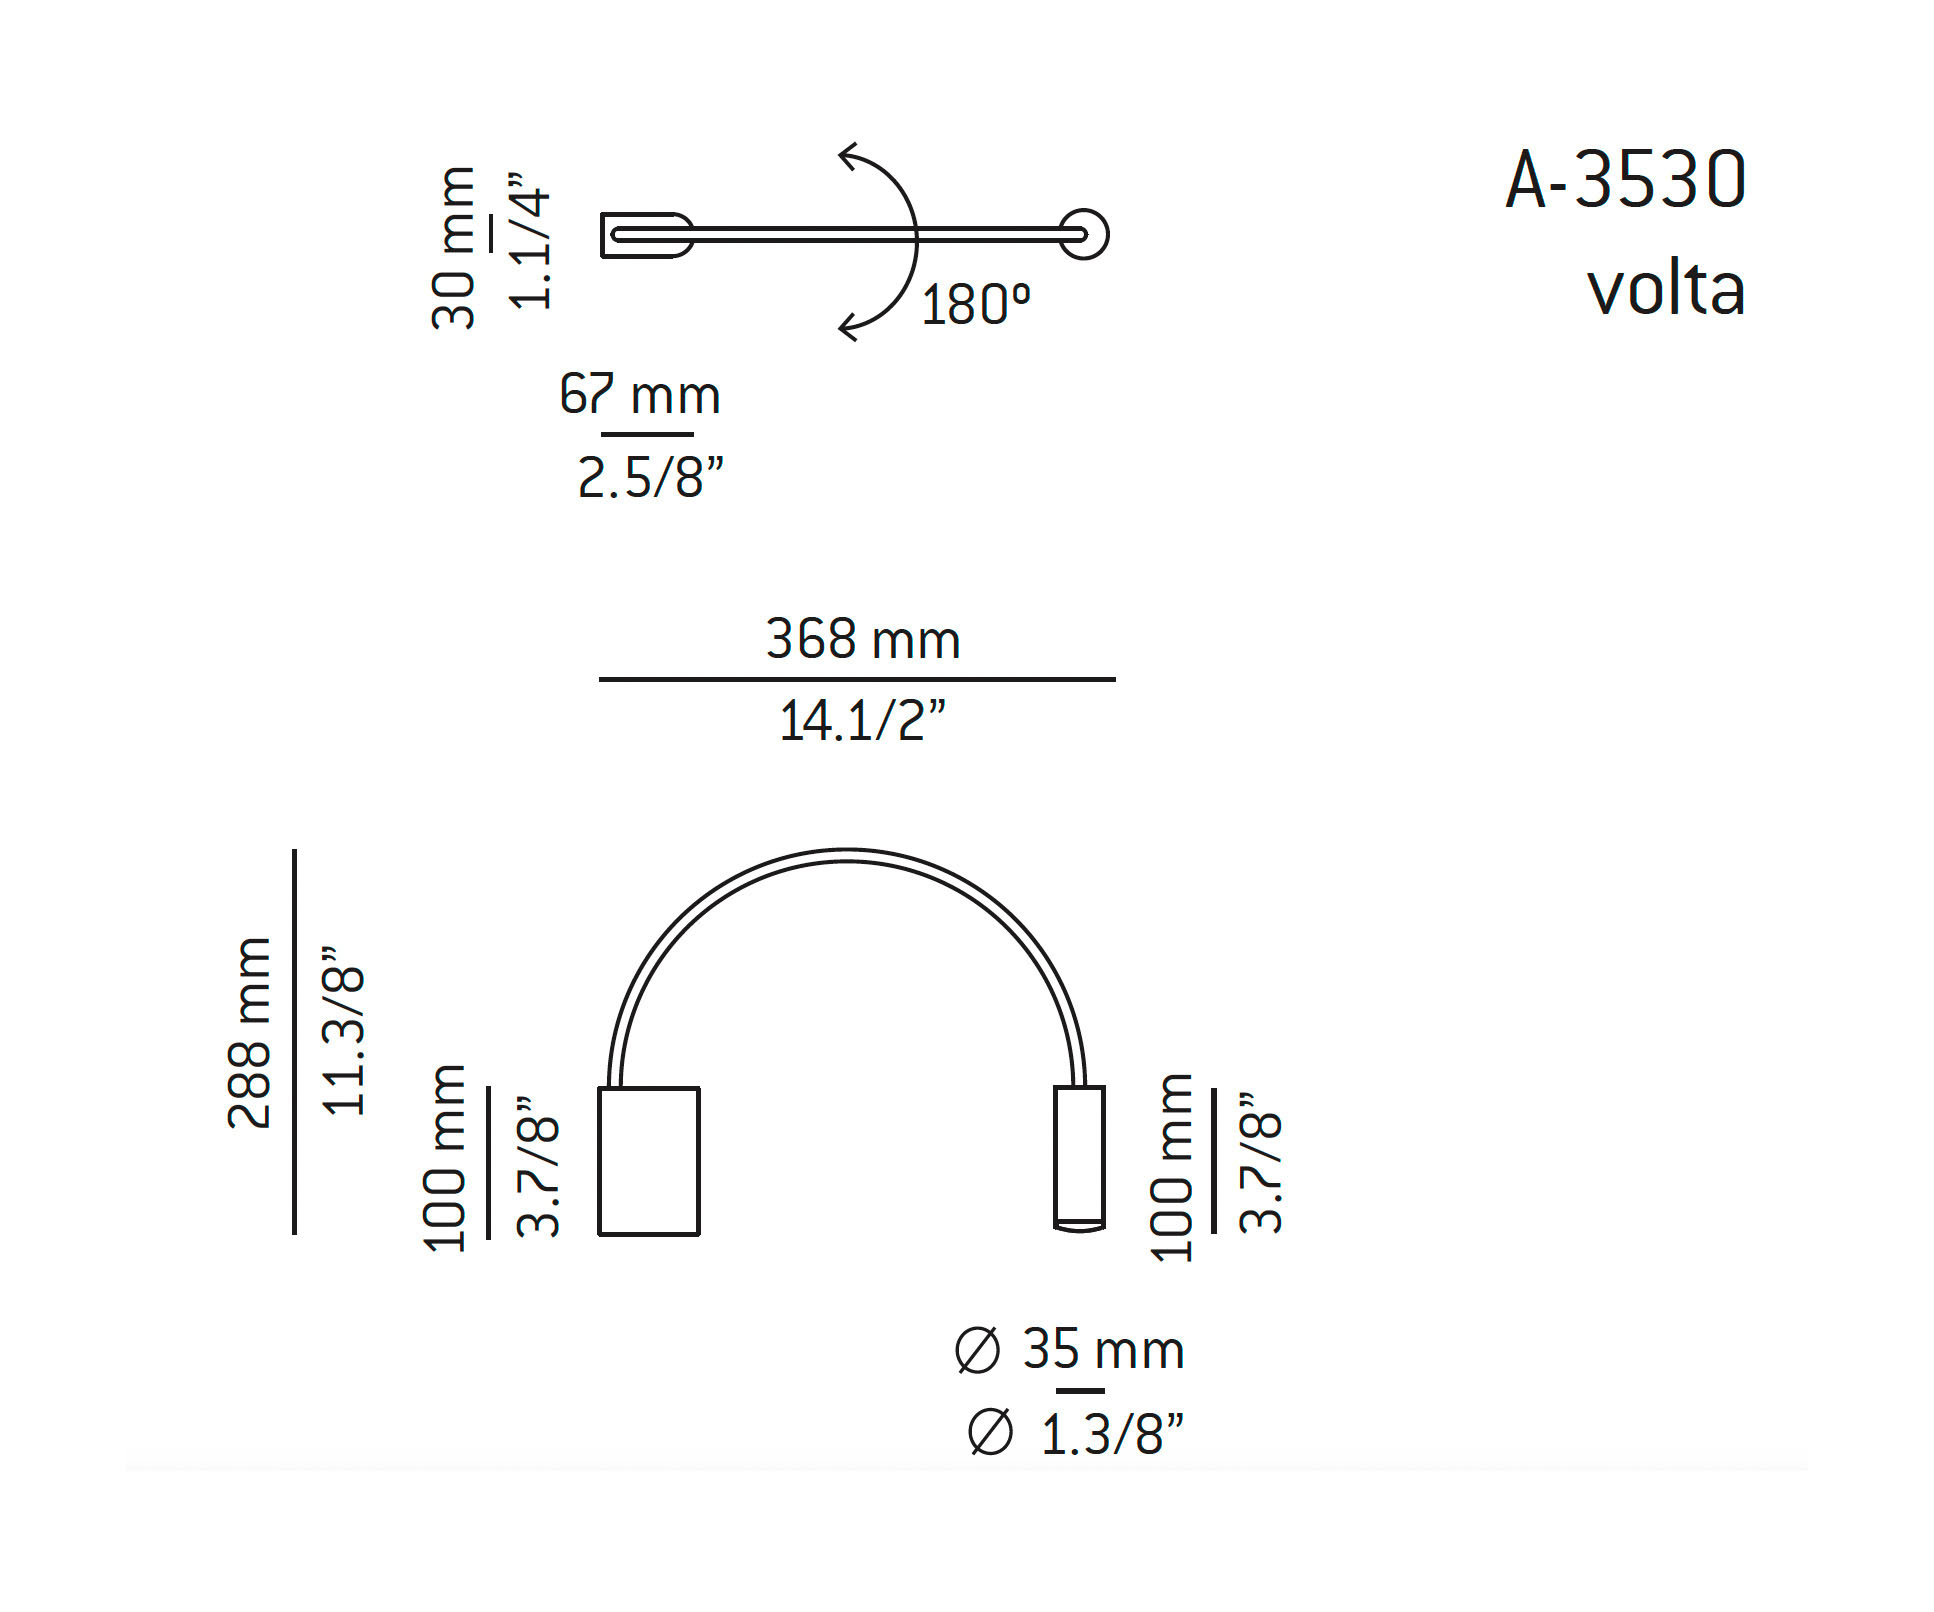 Medidas Volta modelo A-3530 de pared de Estiluz